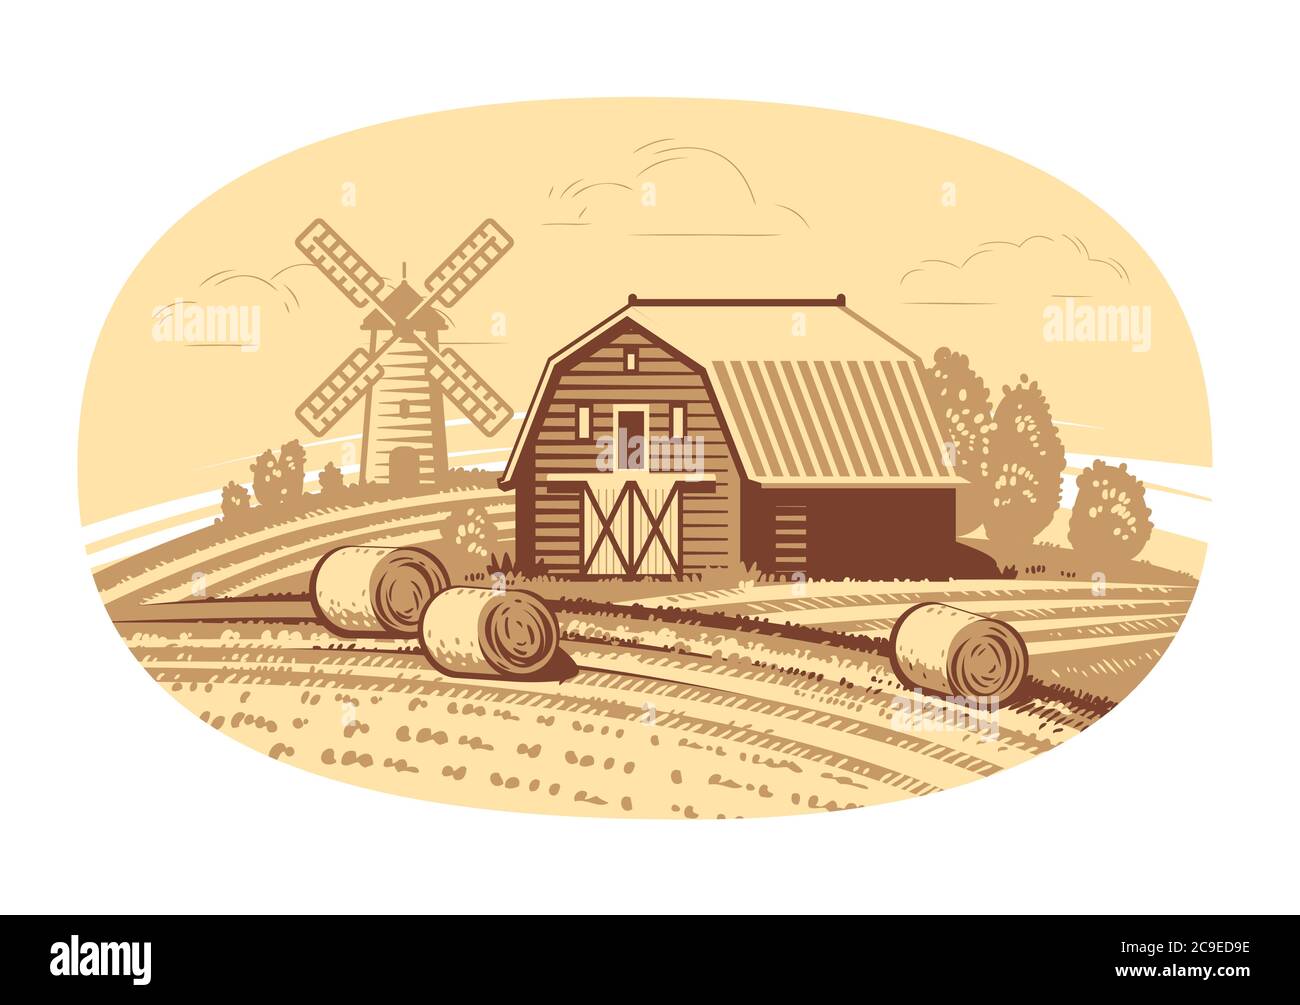 Handgezeichnete Skizze Farmlandschaft. Landwirtschaft, Landwirtschaft, Lebensmittelkonzept Stock Vektor